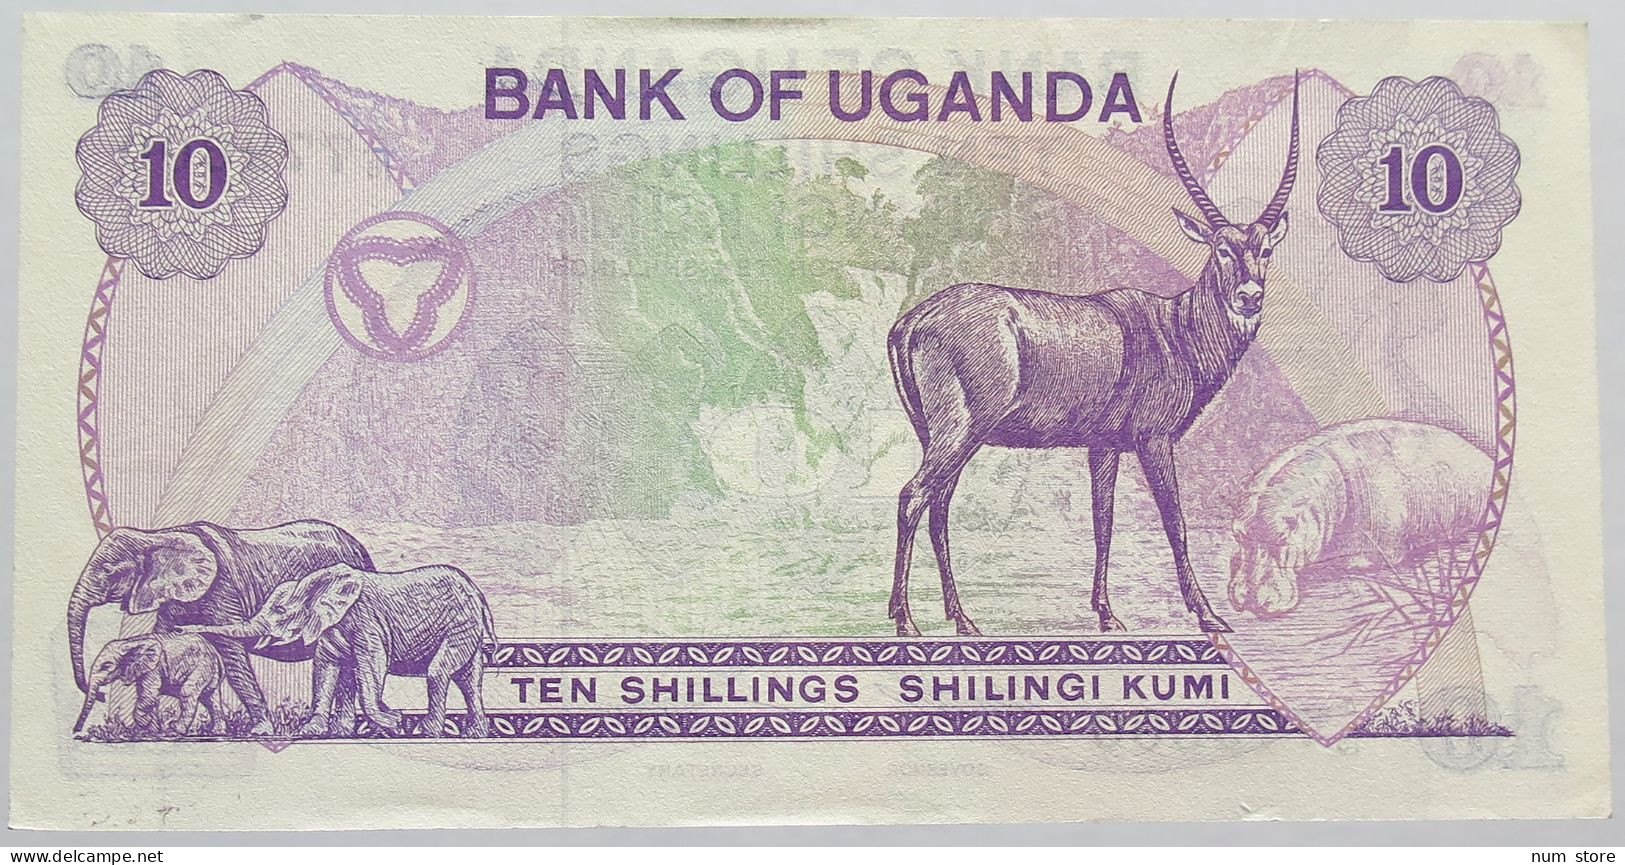 UGANDA 10 SHILLINGS 1982 TOP #alb013 0229 - Oeganda